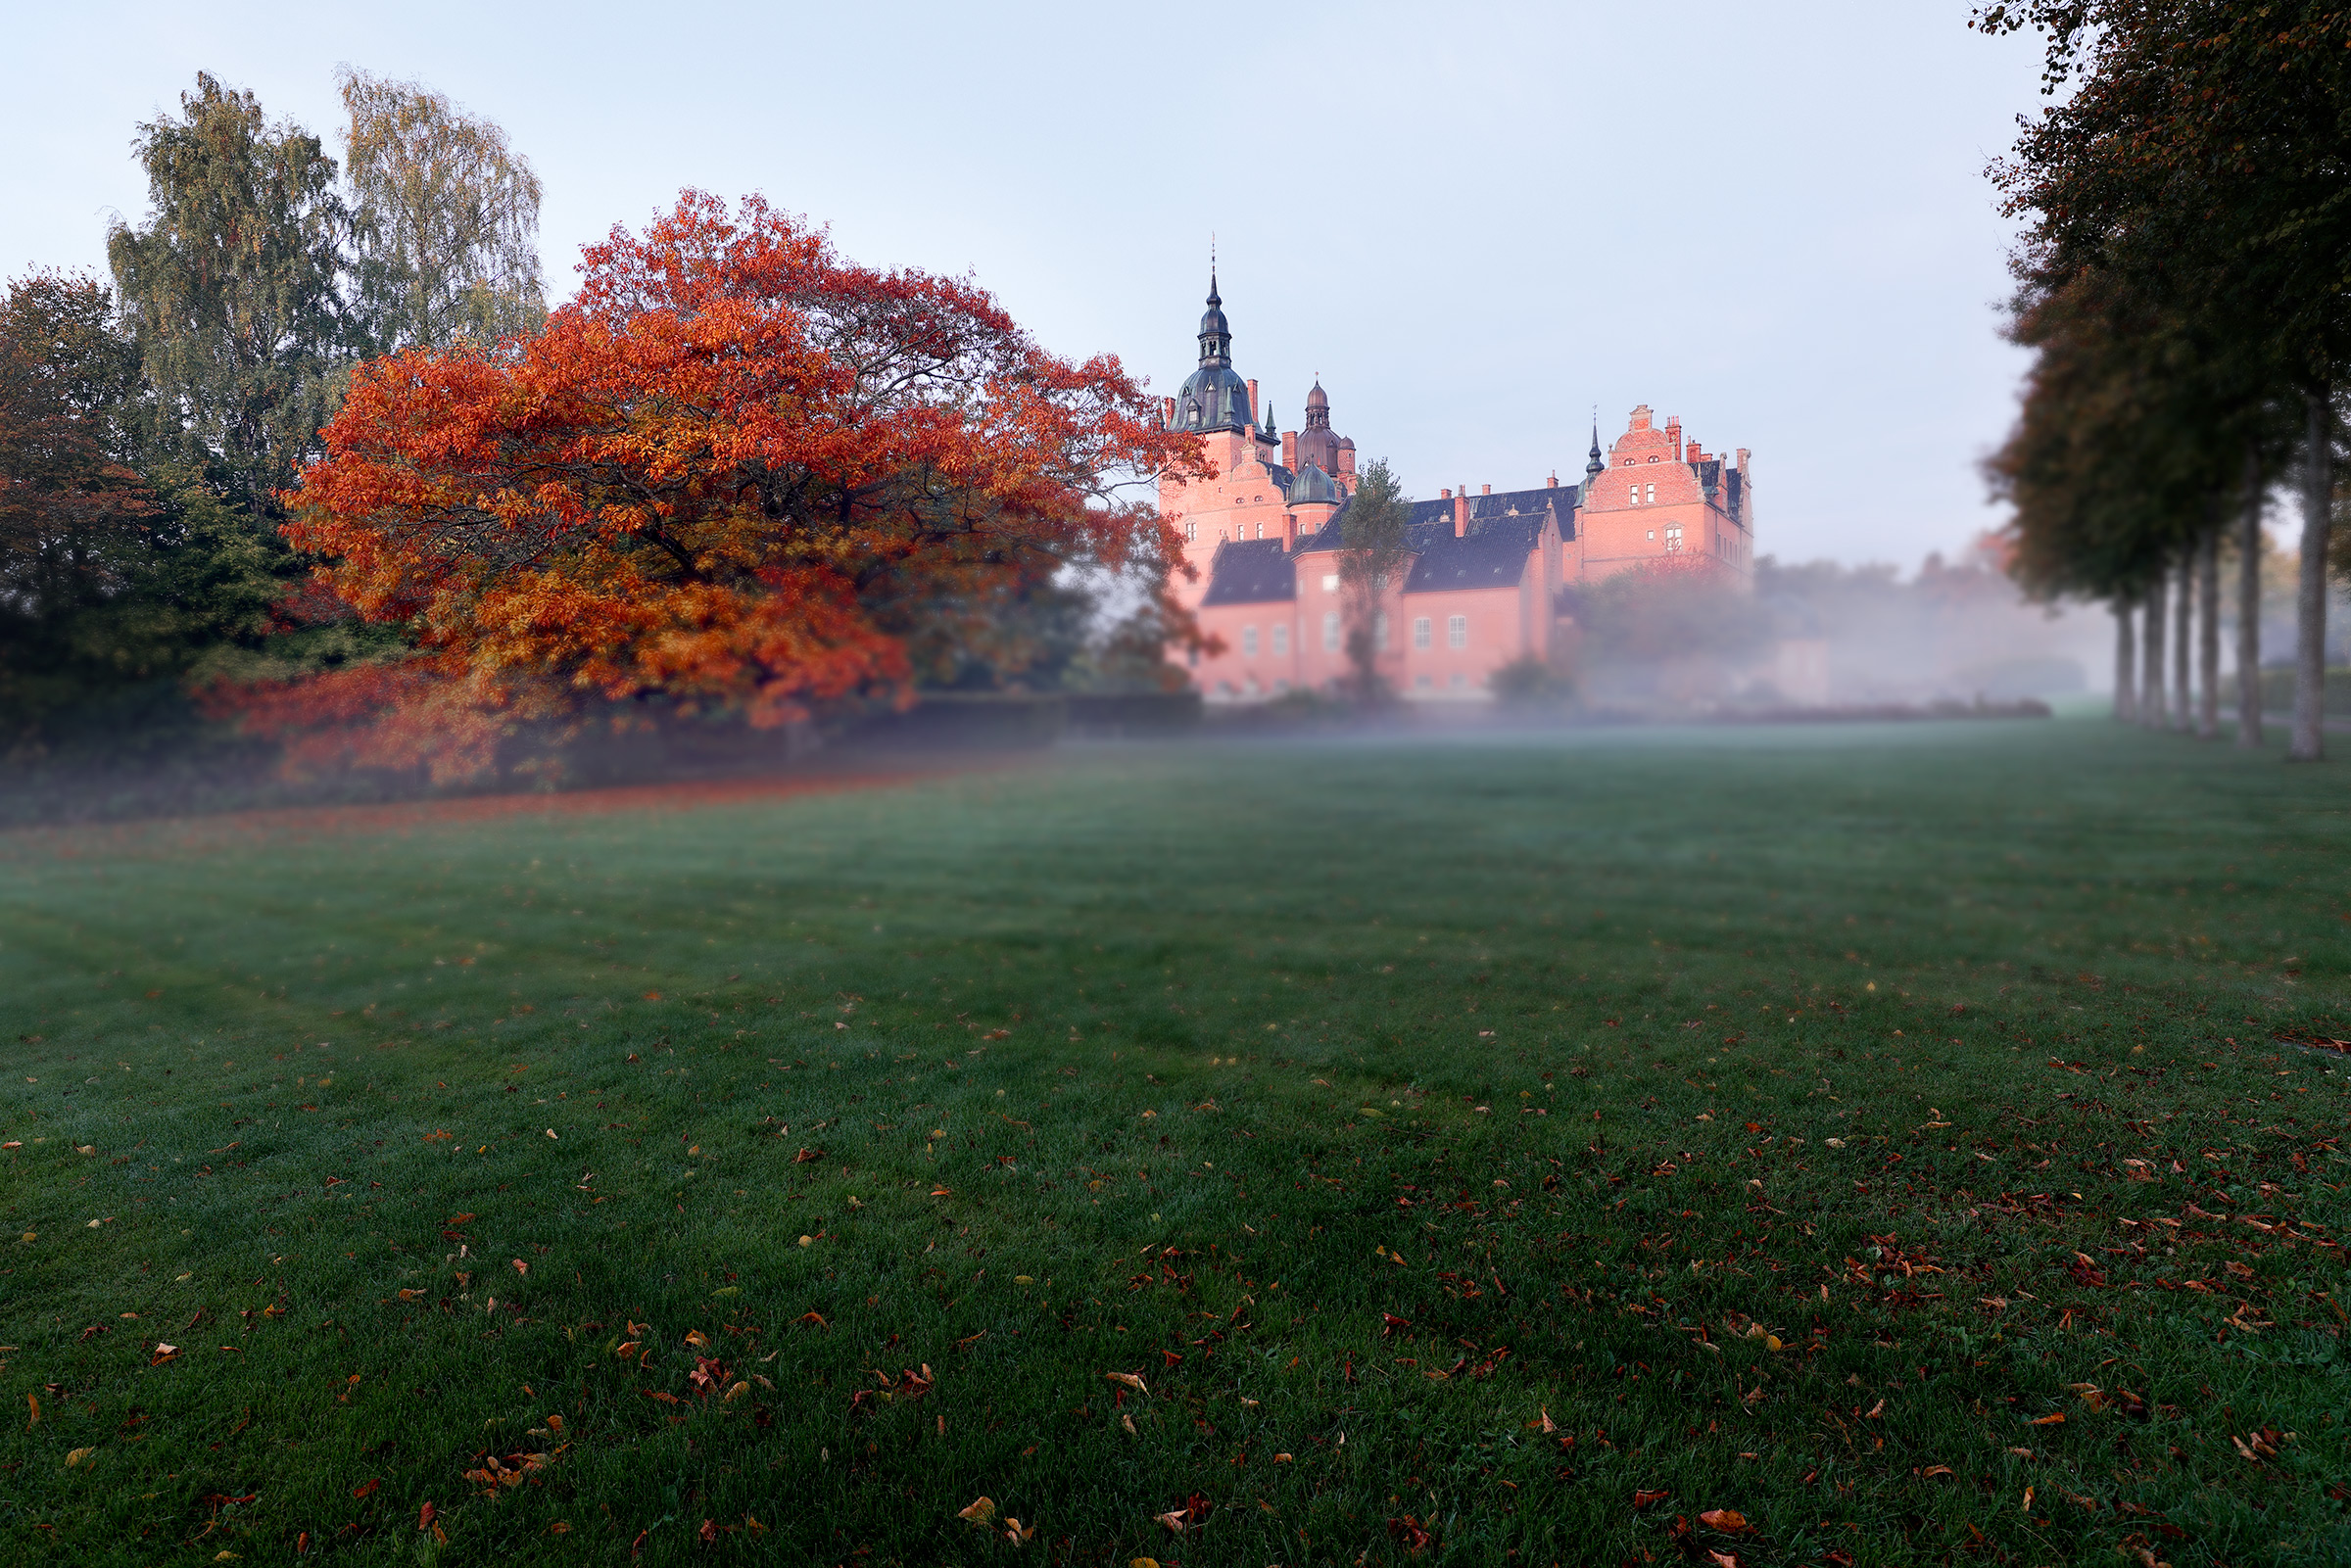 Castle fog and foliage...